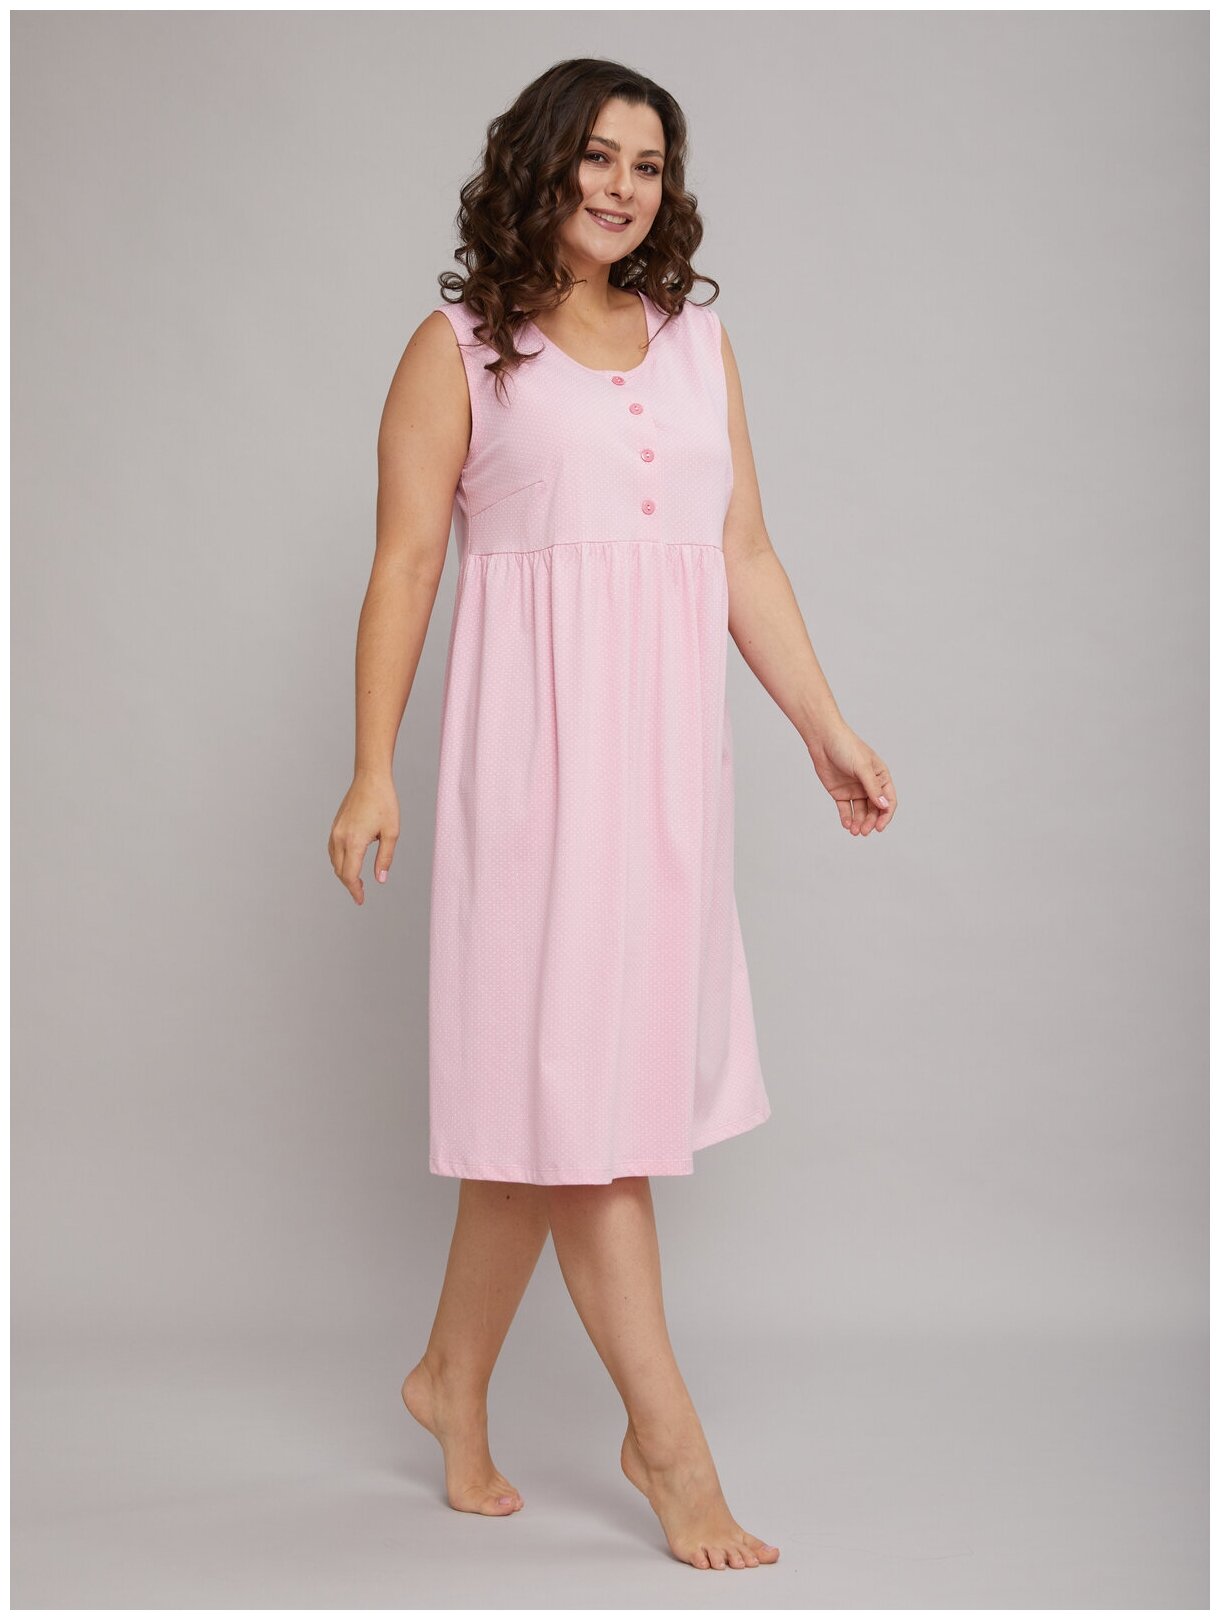 Сорочка ночная женская Алтекс без рукавов розовая в горошек, размер 52 - фотография № 4